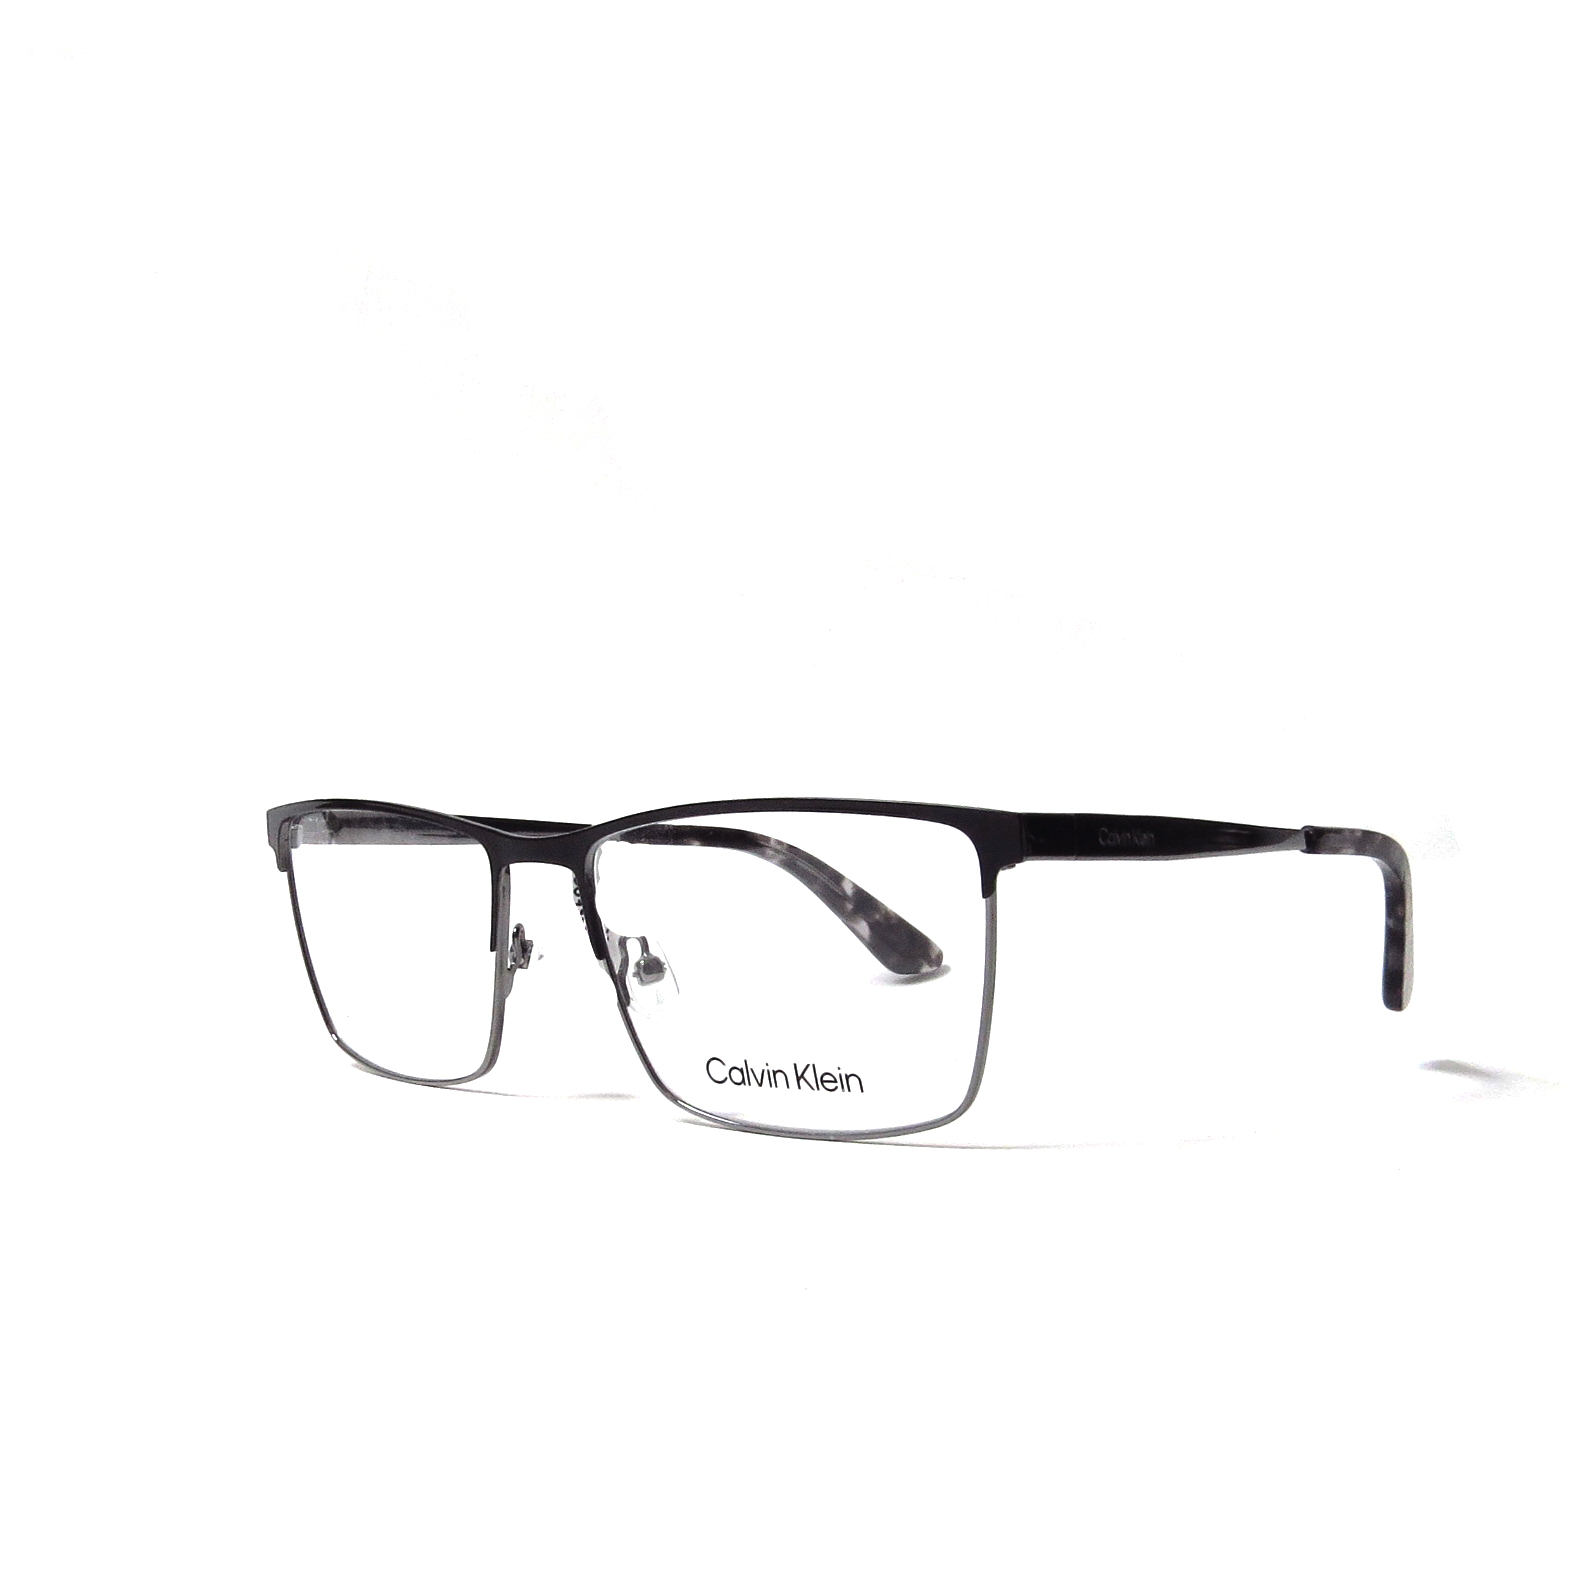 Óptica gafas | CALVIN KLEIN - Óptica las gafas